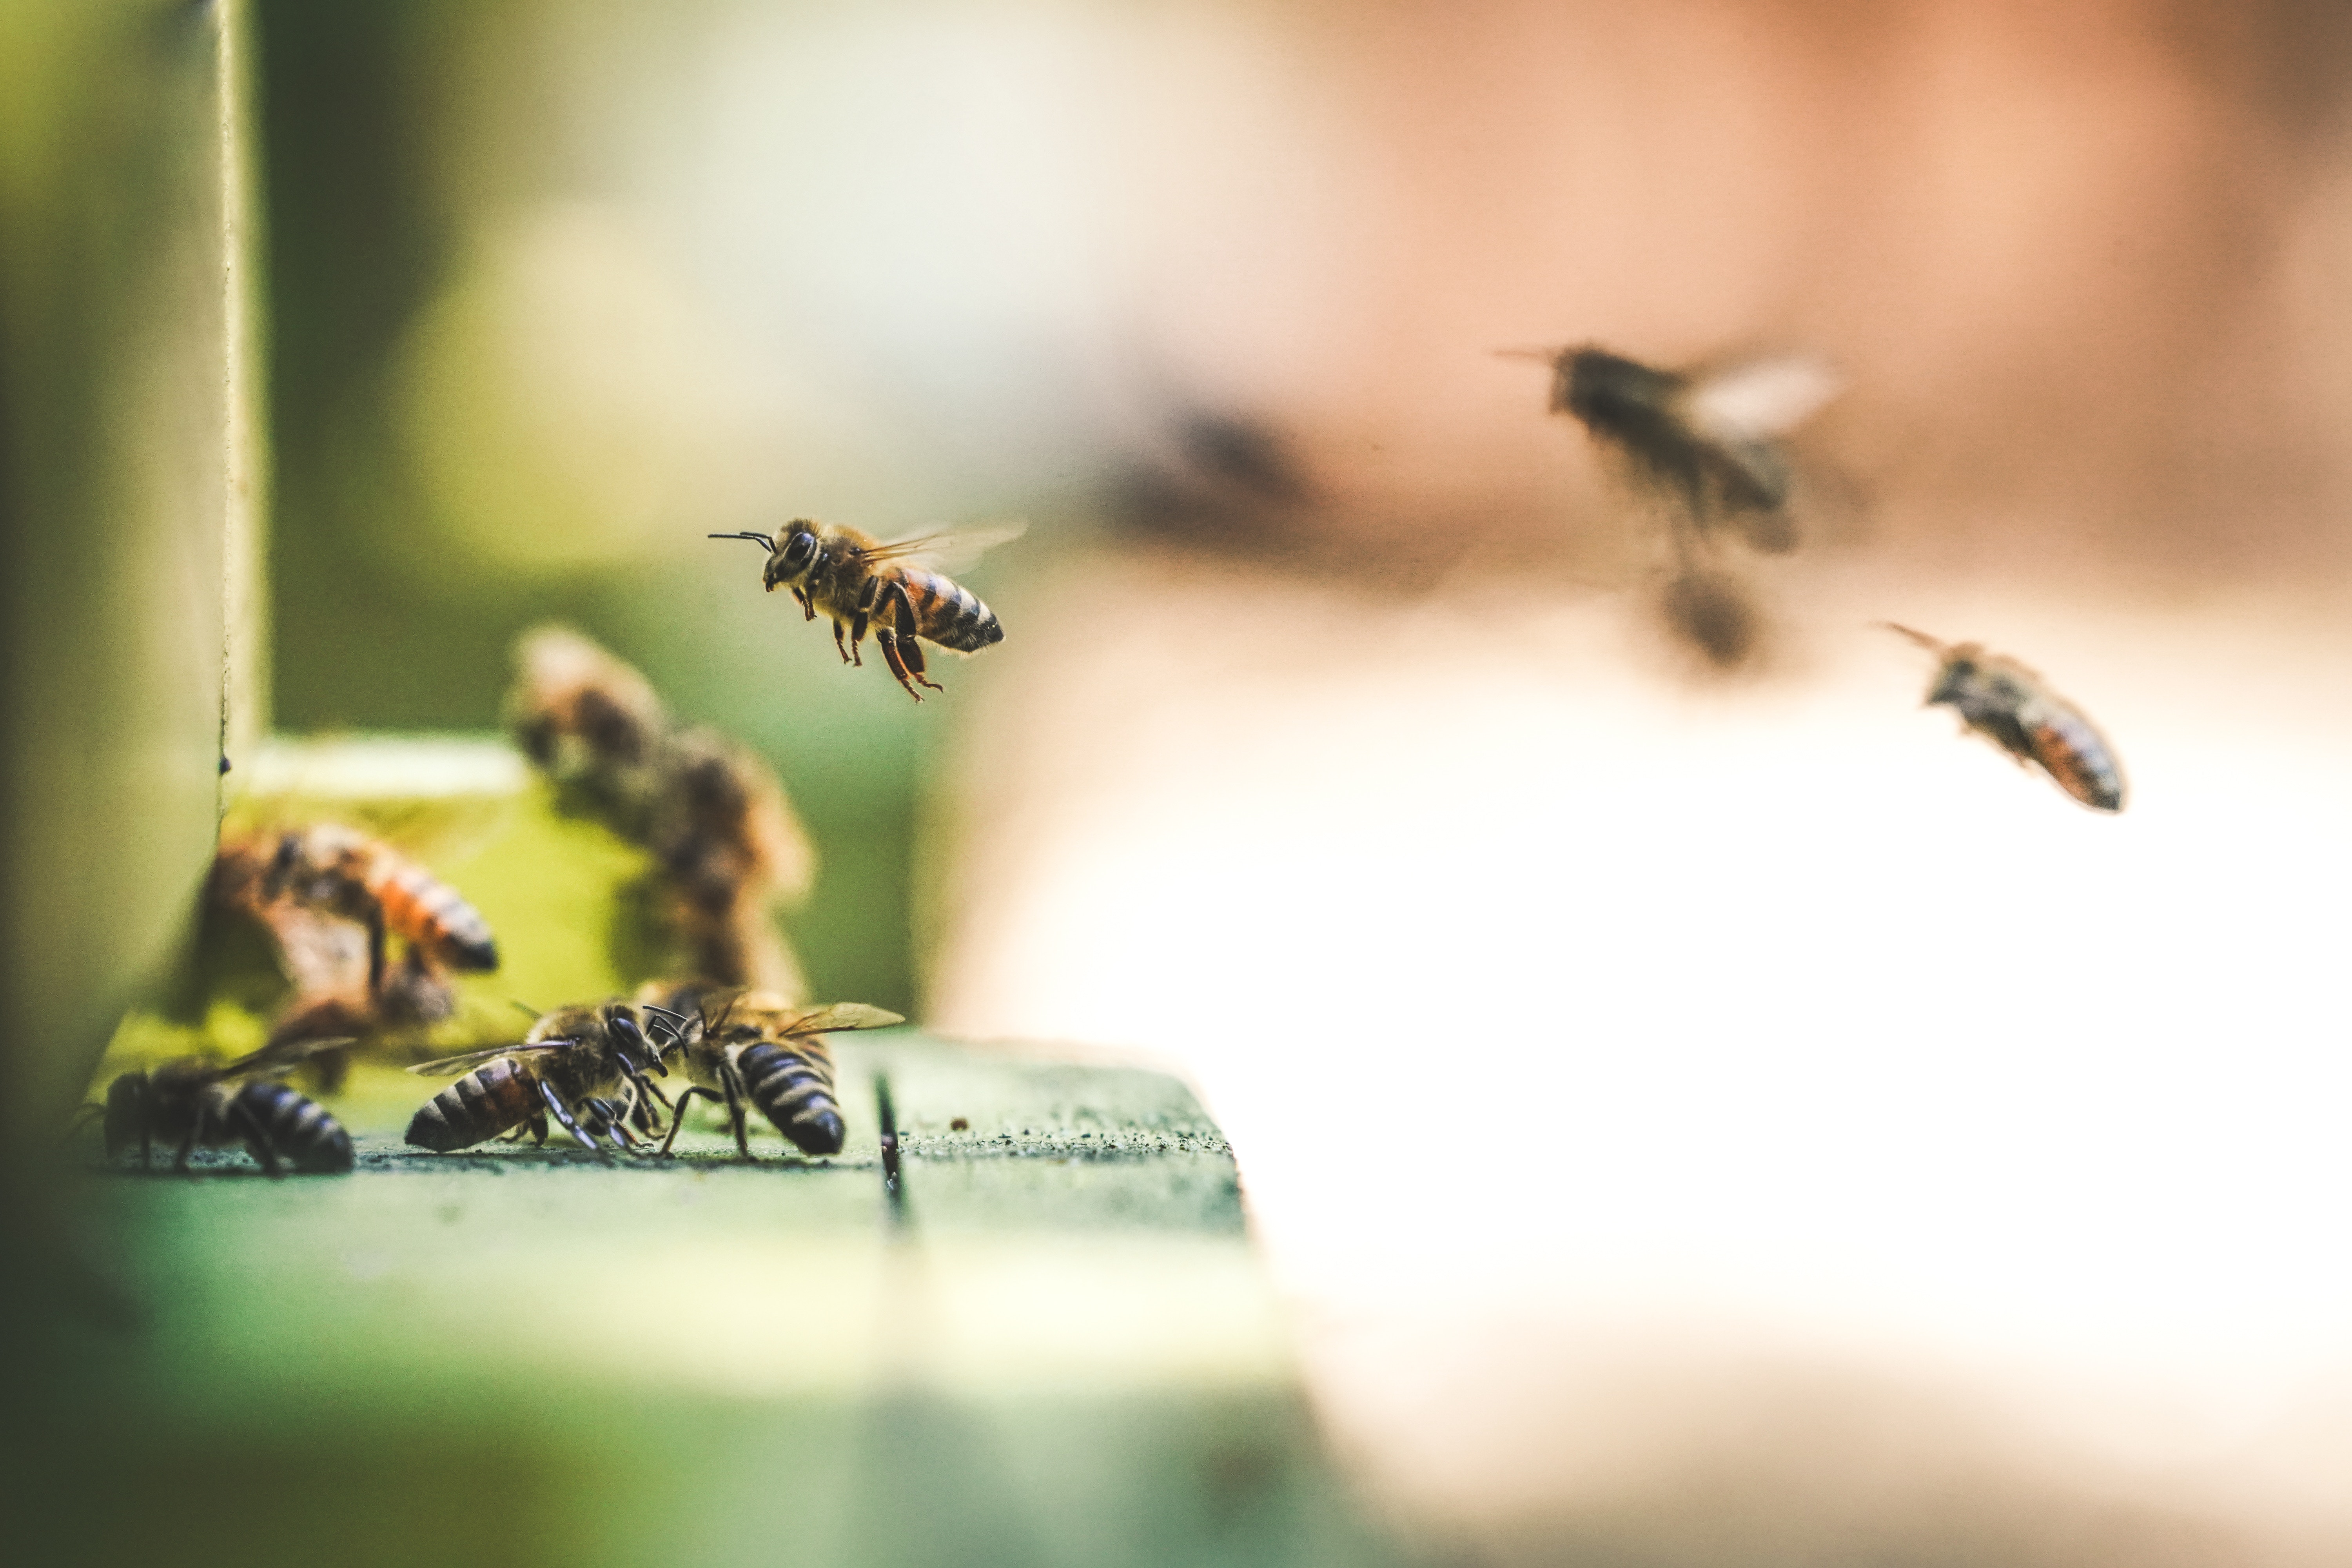 ayudar a más abejas planta más árboles limpiar los mares con capucha,... Guardar las abejas con capucha